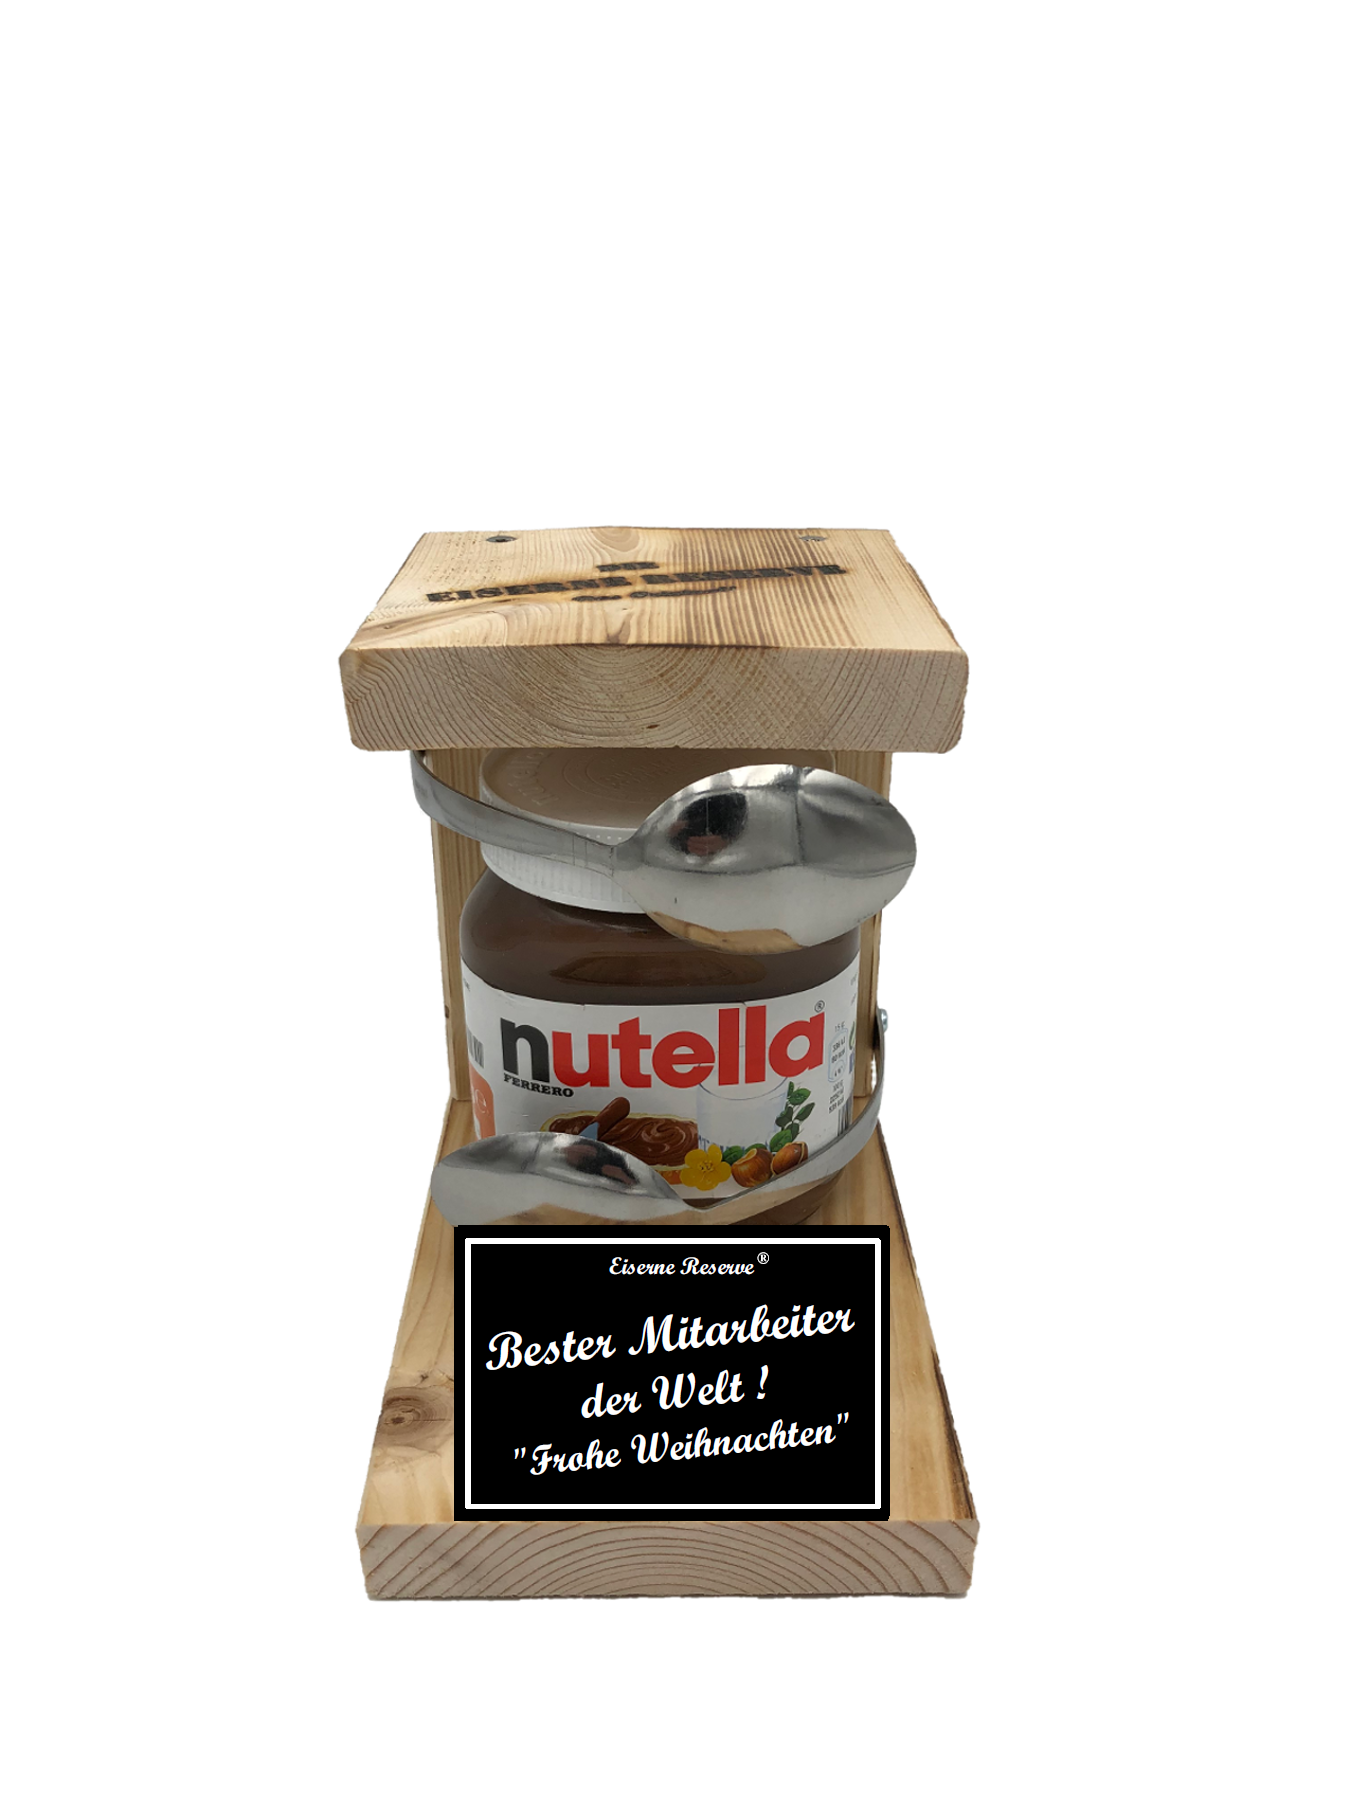 Bester Mitarbeiter der Welt Frohe Weihnachten Löffel Nutella Geschenk - Die Nutella Geschenkidee